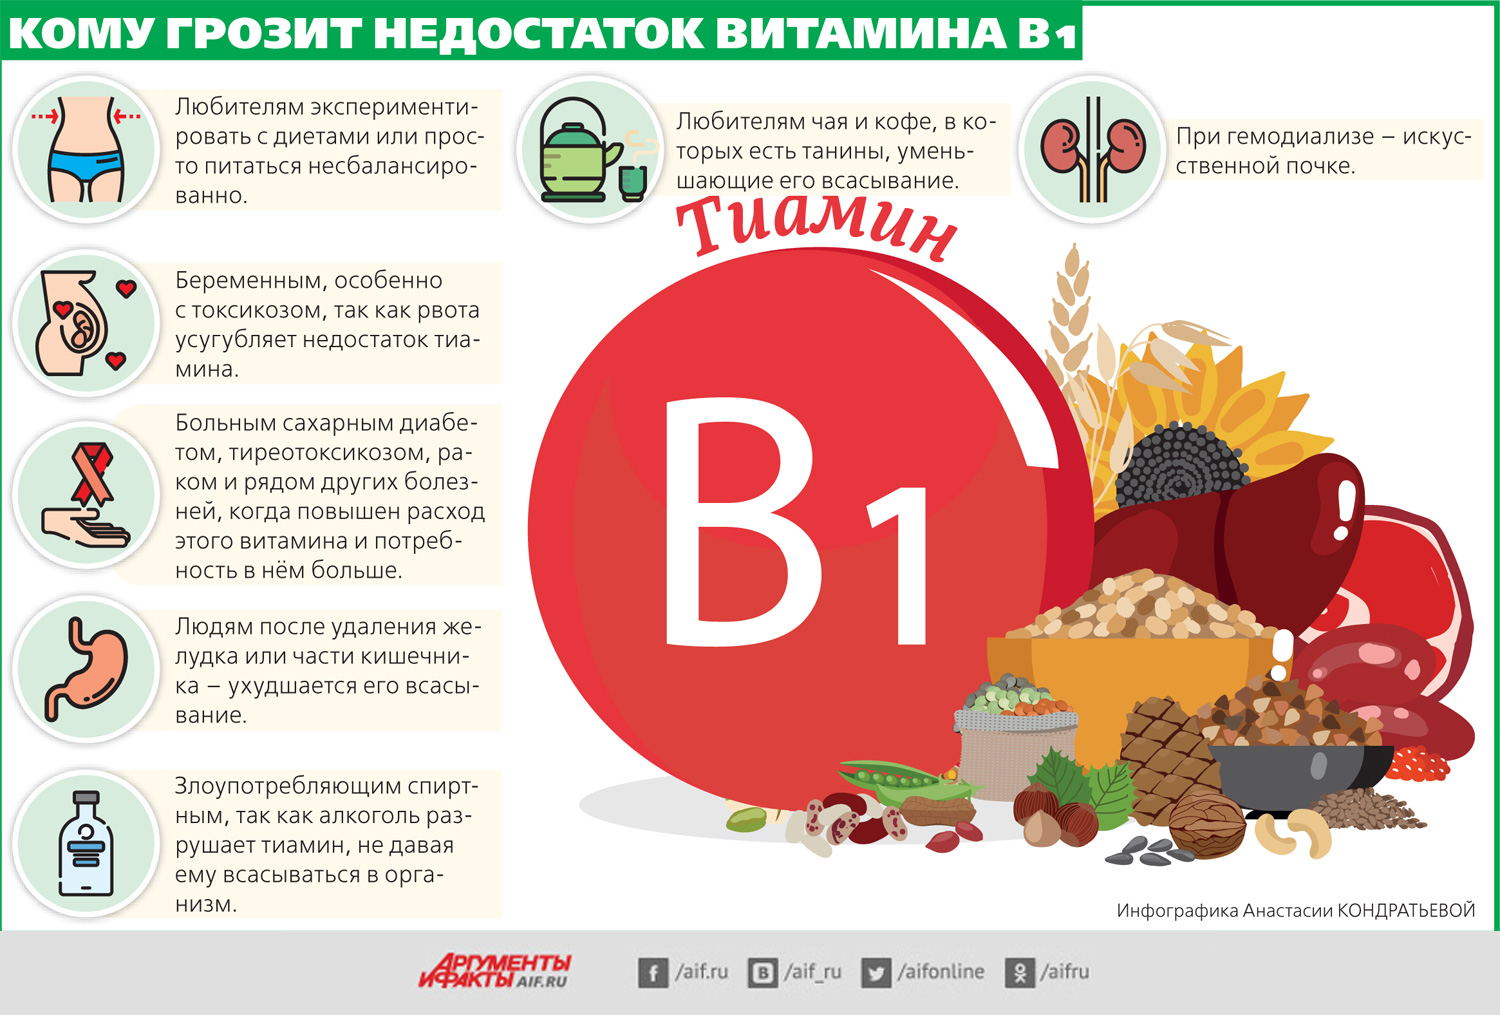 Б 6 для организма. Витамин в1 дефицит болезни. Недостаток витамина b1. Симптомы витамина b1. Признаки недостатка витамина b1.